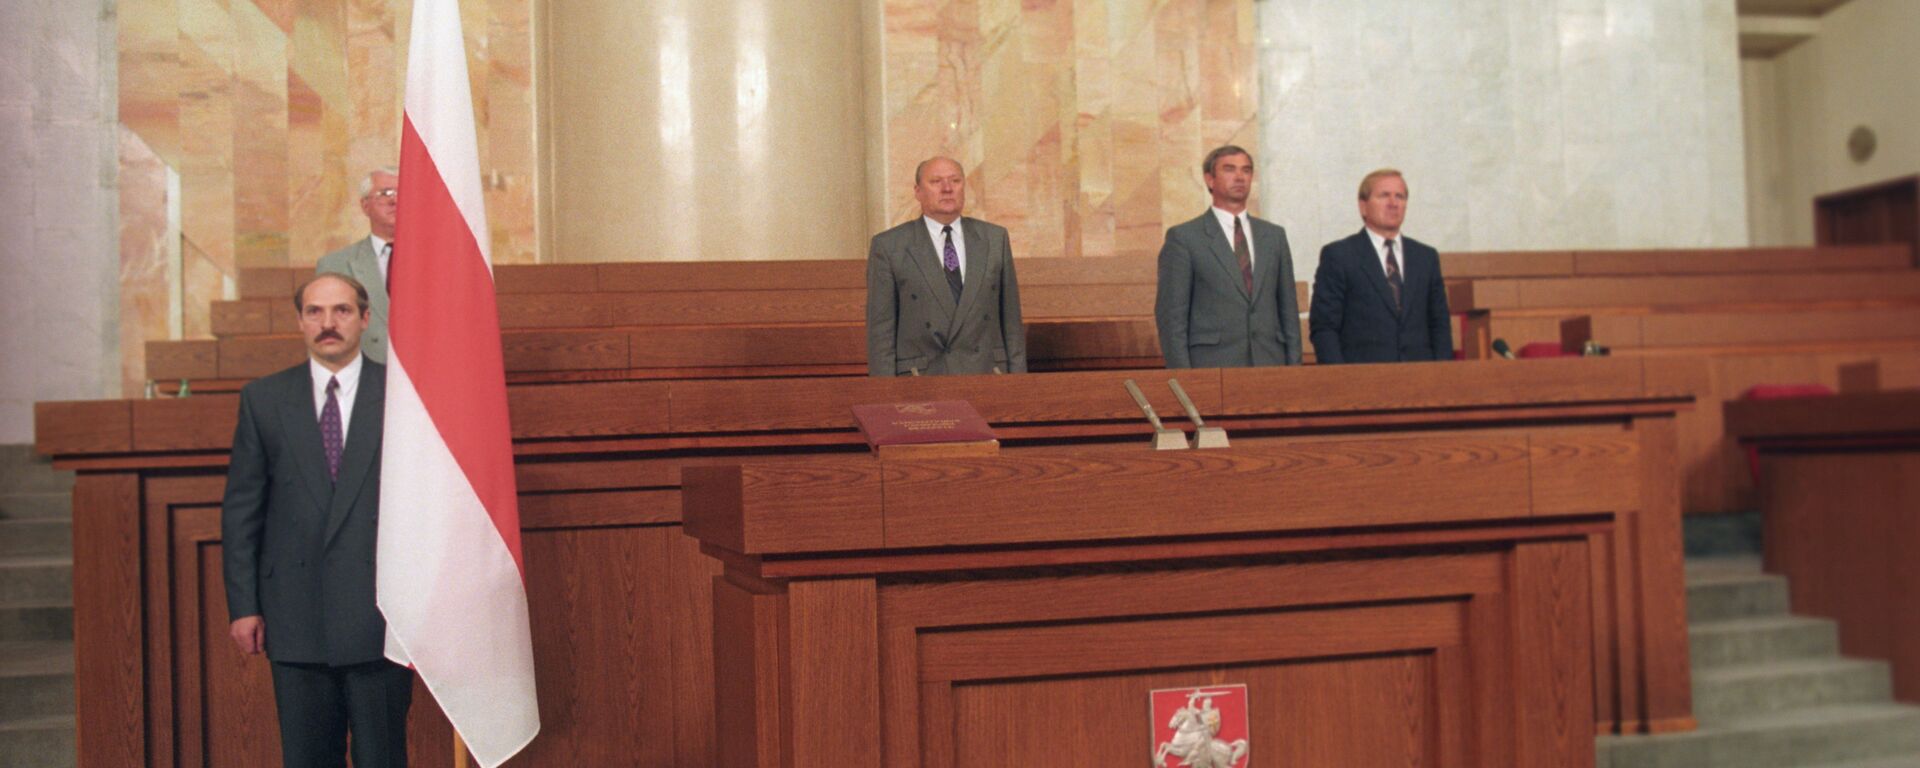 Церемония инаугурации первого президента Республики Беларусь Александра Лукашенко, 20 июля 1994 года - Sputnik Беларусь, 1920, 23.06.2020